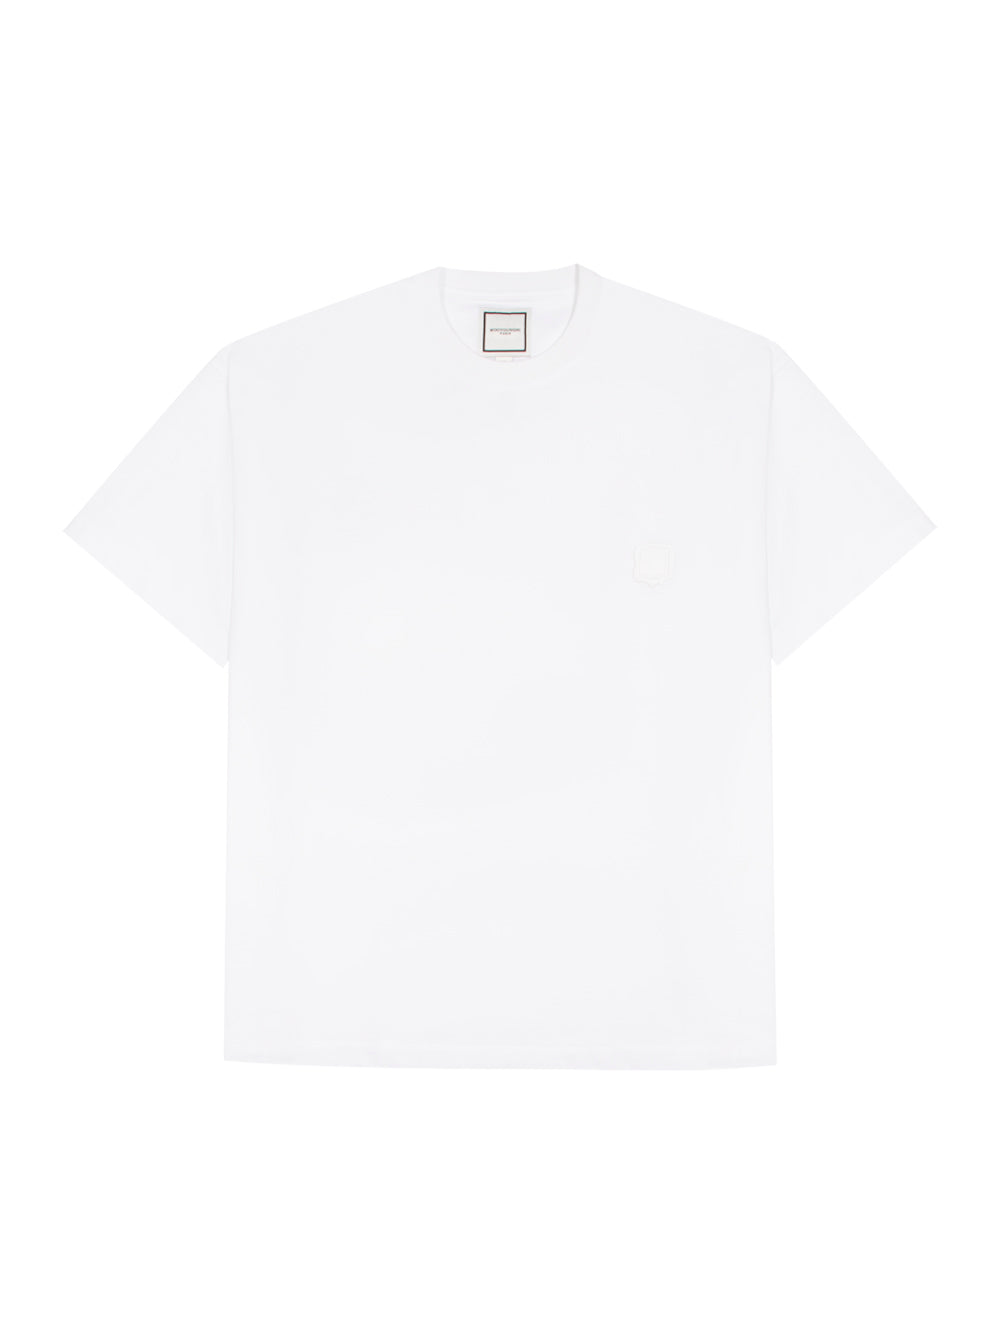 Mens T-Shirt White